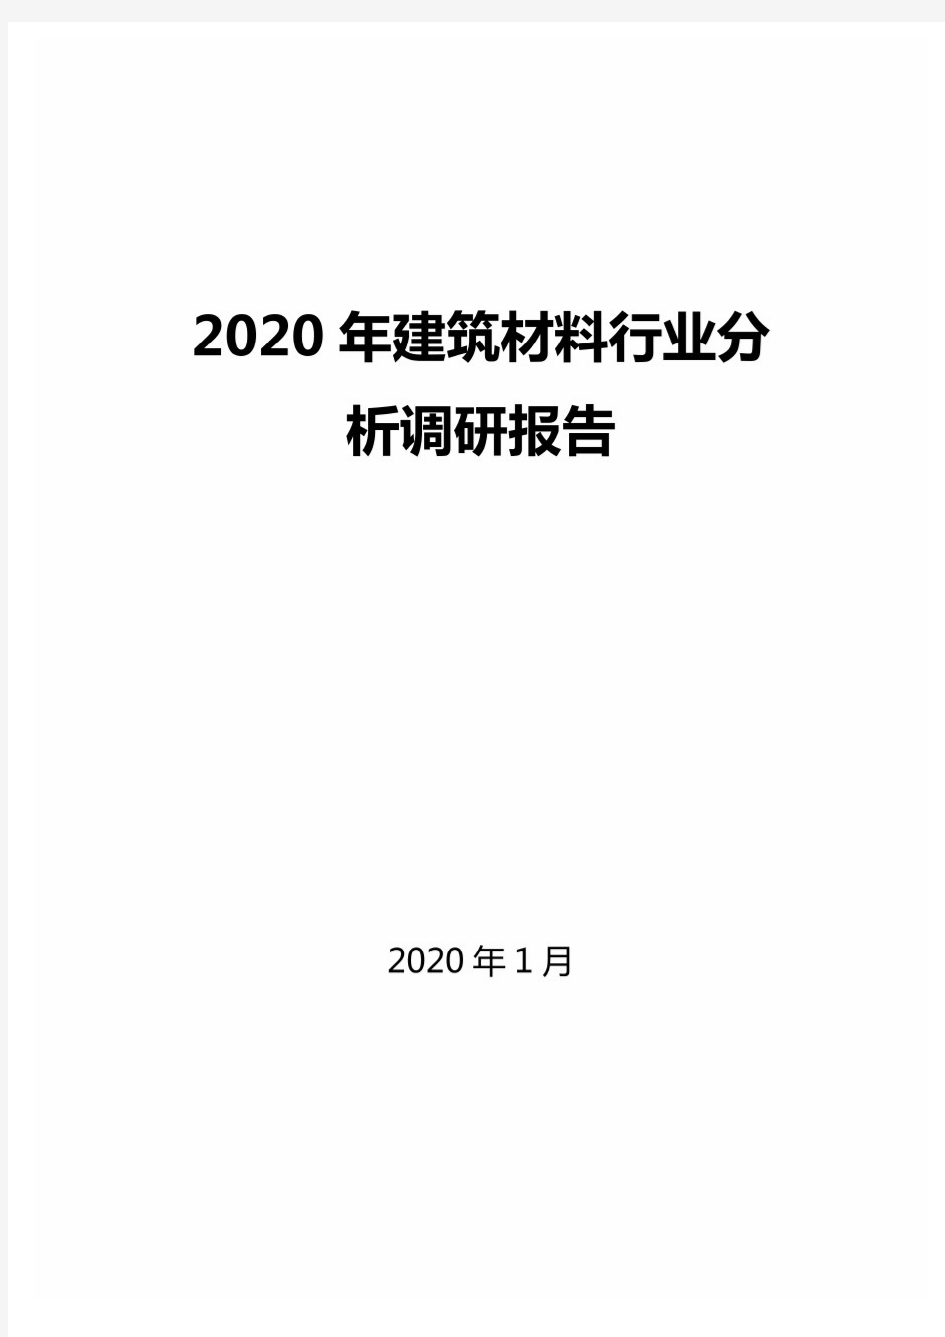 2020年建筑材料行业分析调研报告